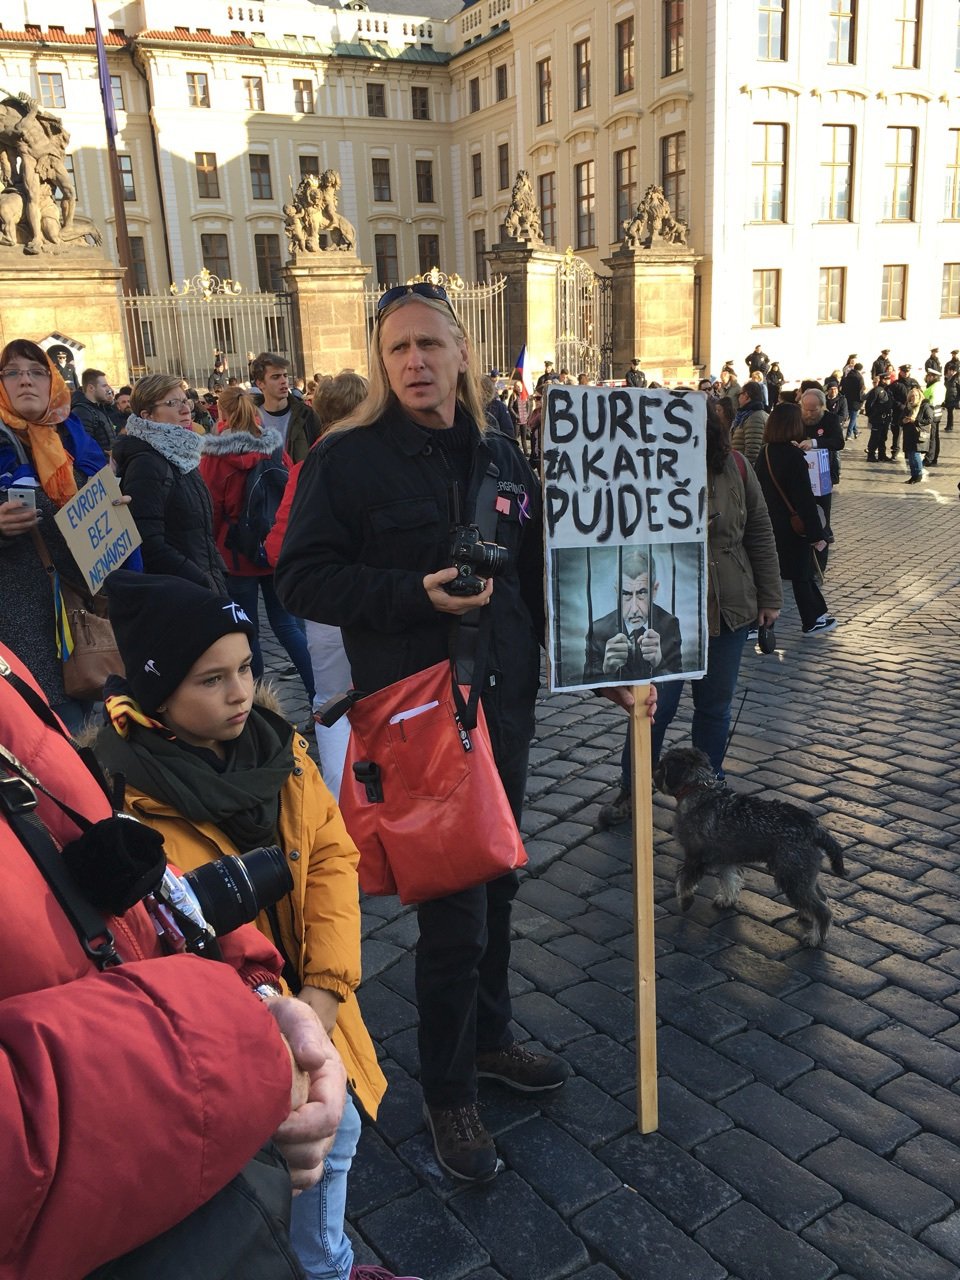 Protibabišovská demonstrace v Praze. (17.11.2018)